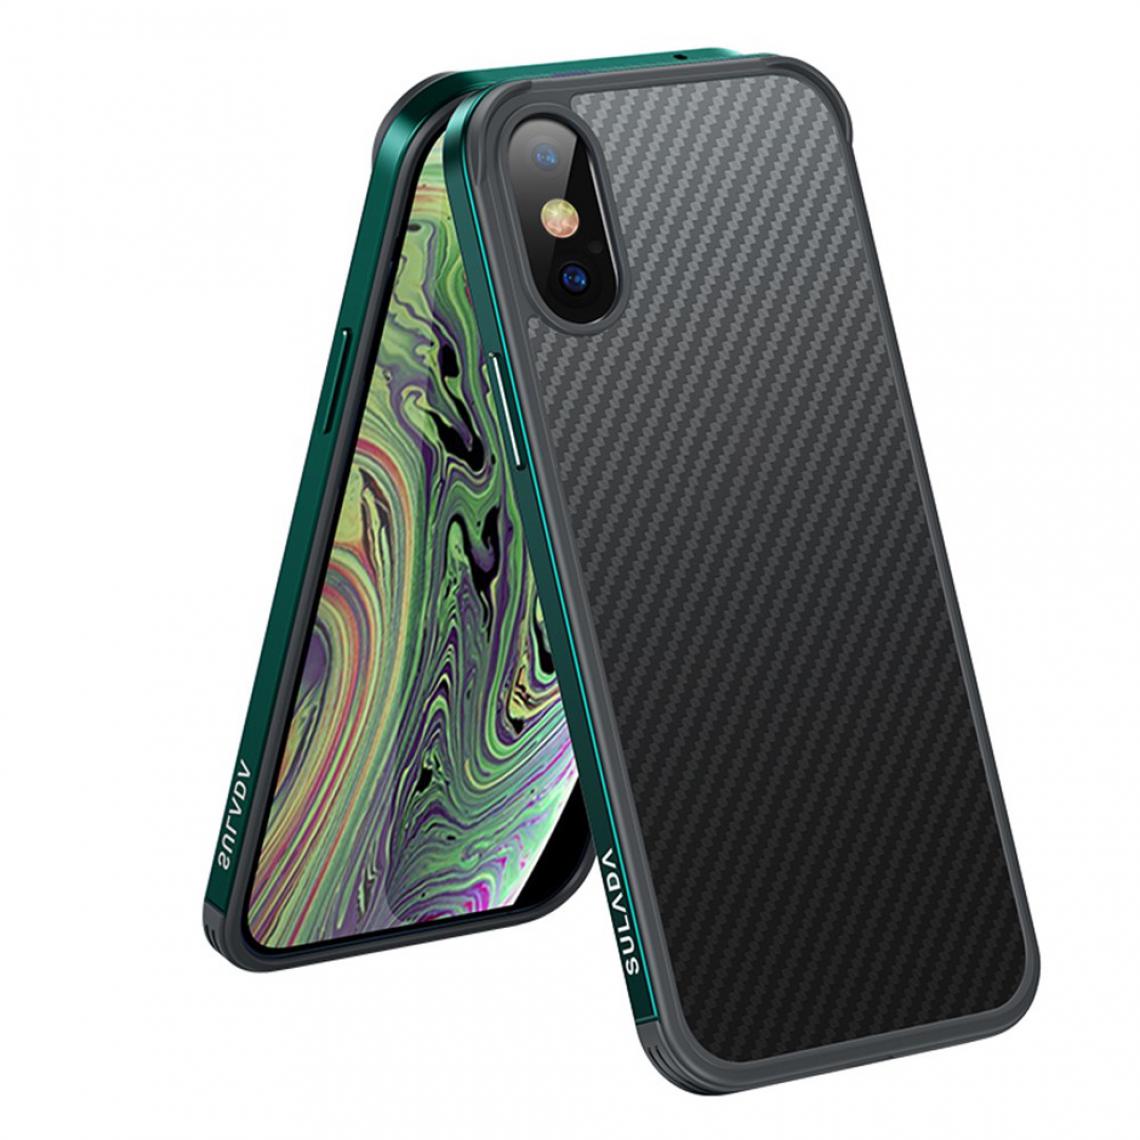 Sulada - Coque en TPU Hybride à texture de fibre de carbone vert pour votre Apple iPhone XS Max 6.5 pouces - Coque, étui smartphone